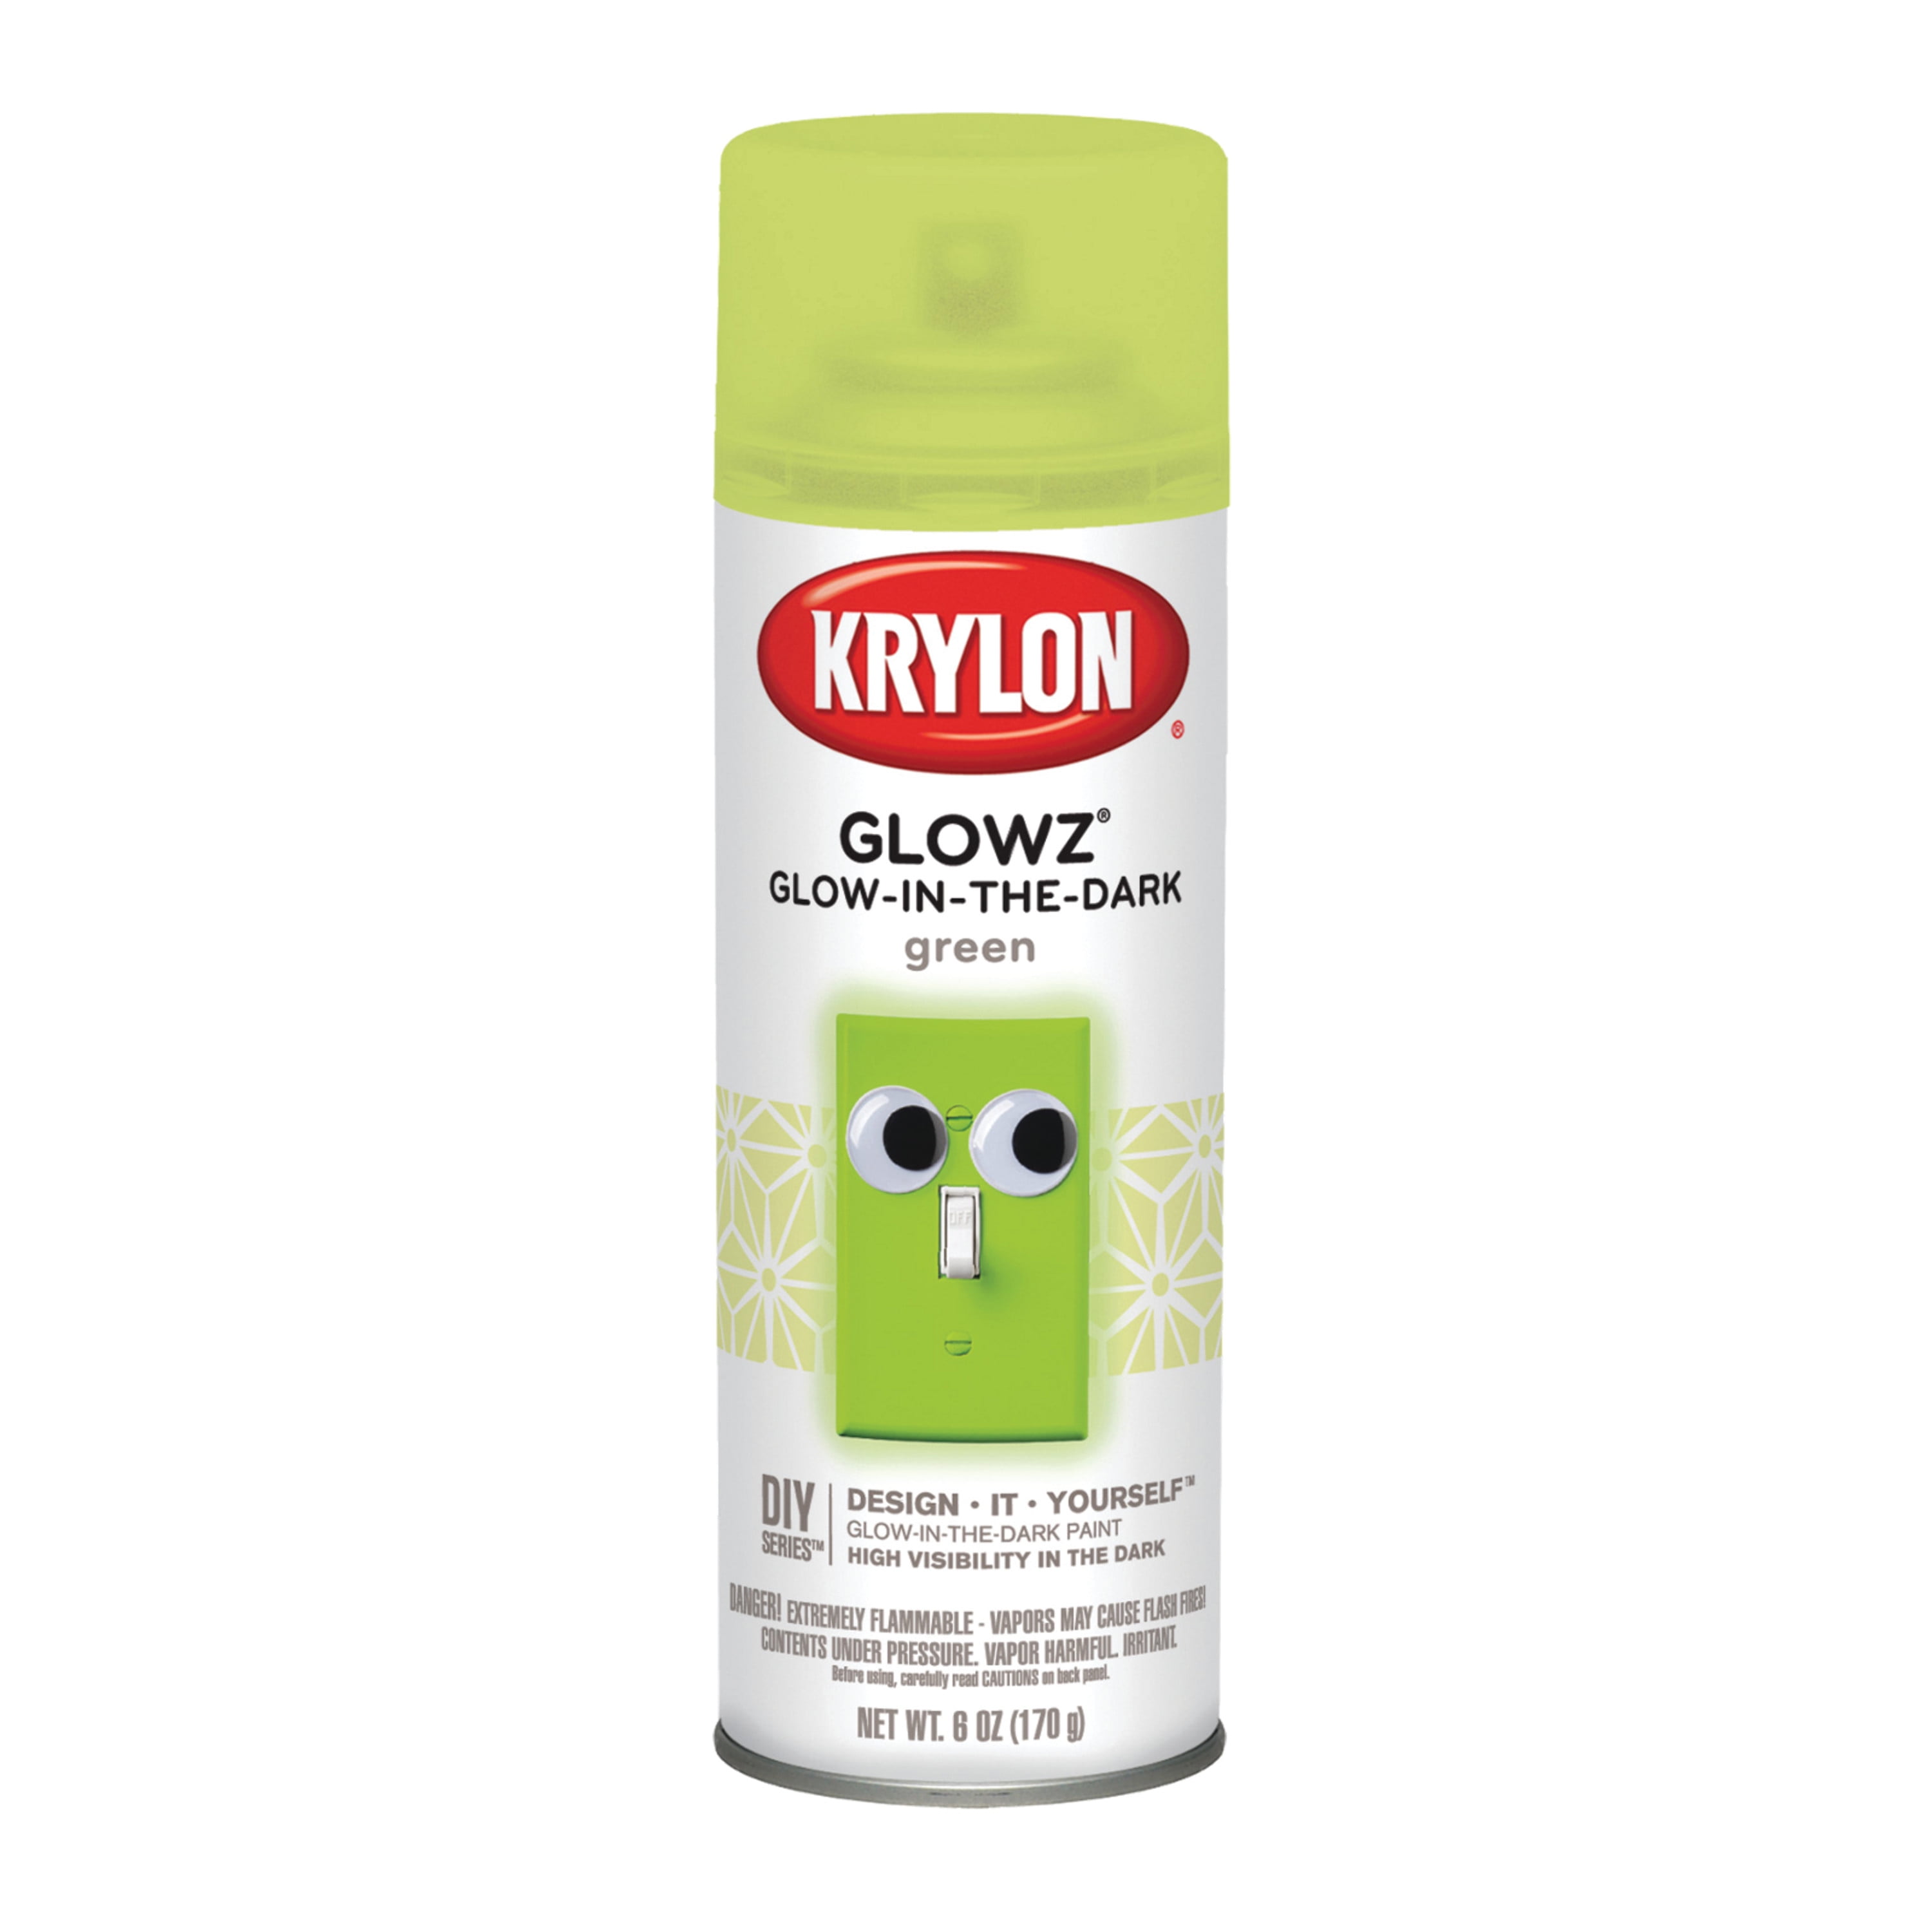 Krylon Matte Finish Spray Review IS IT REALLY WATERPROOF? 